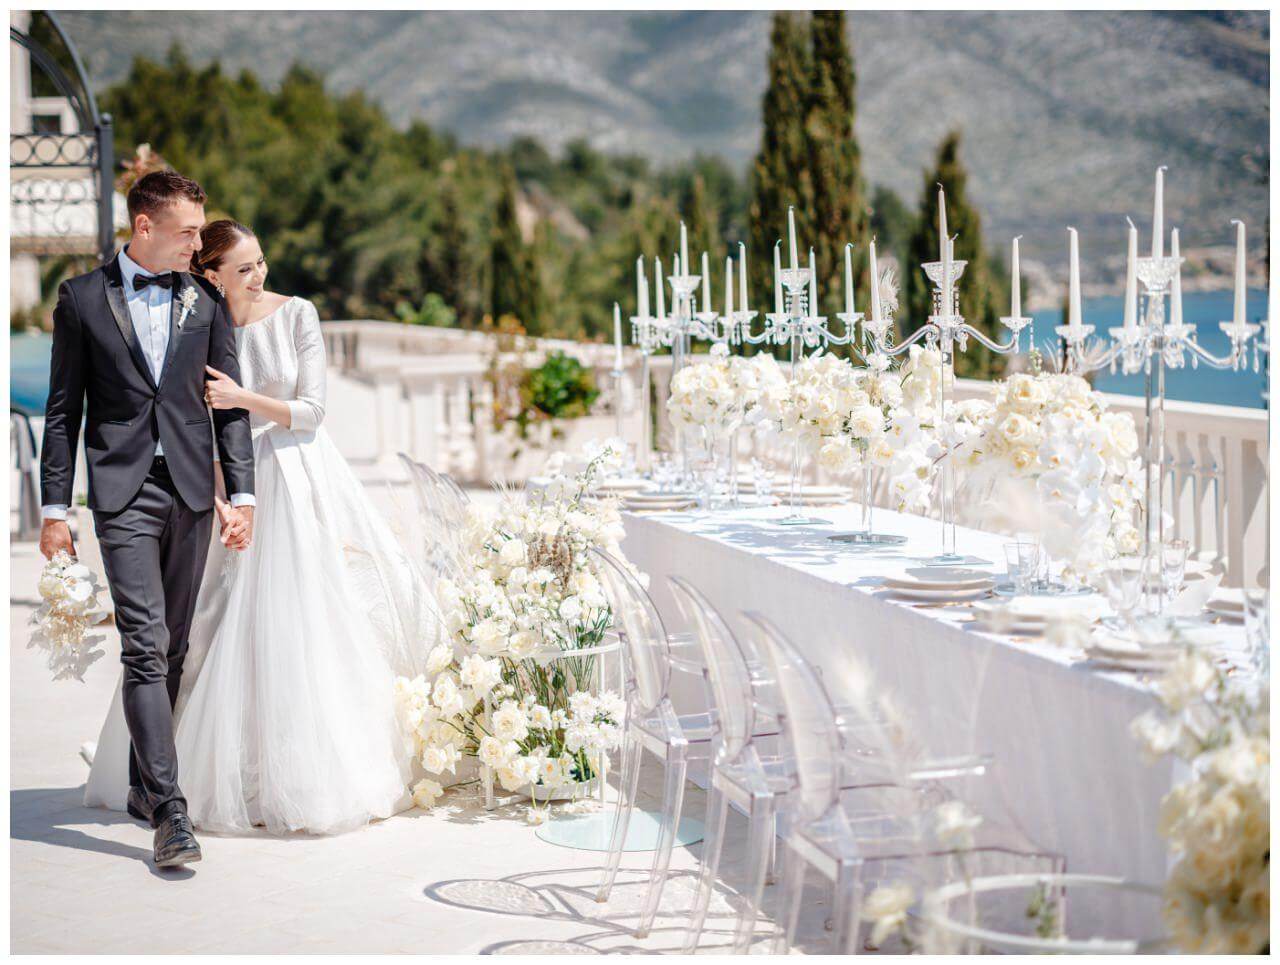 Luxus Hochzeit am Meer Kroatien Pool Hochzeitsfarbe Weiß Glamour